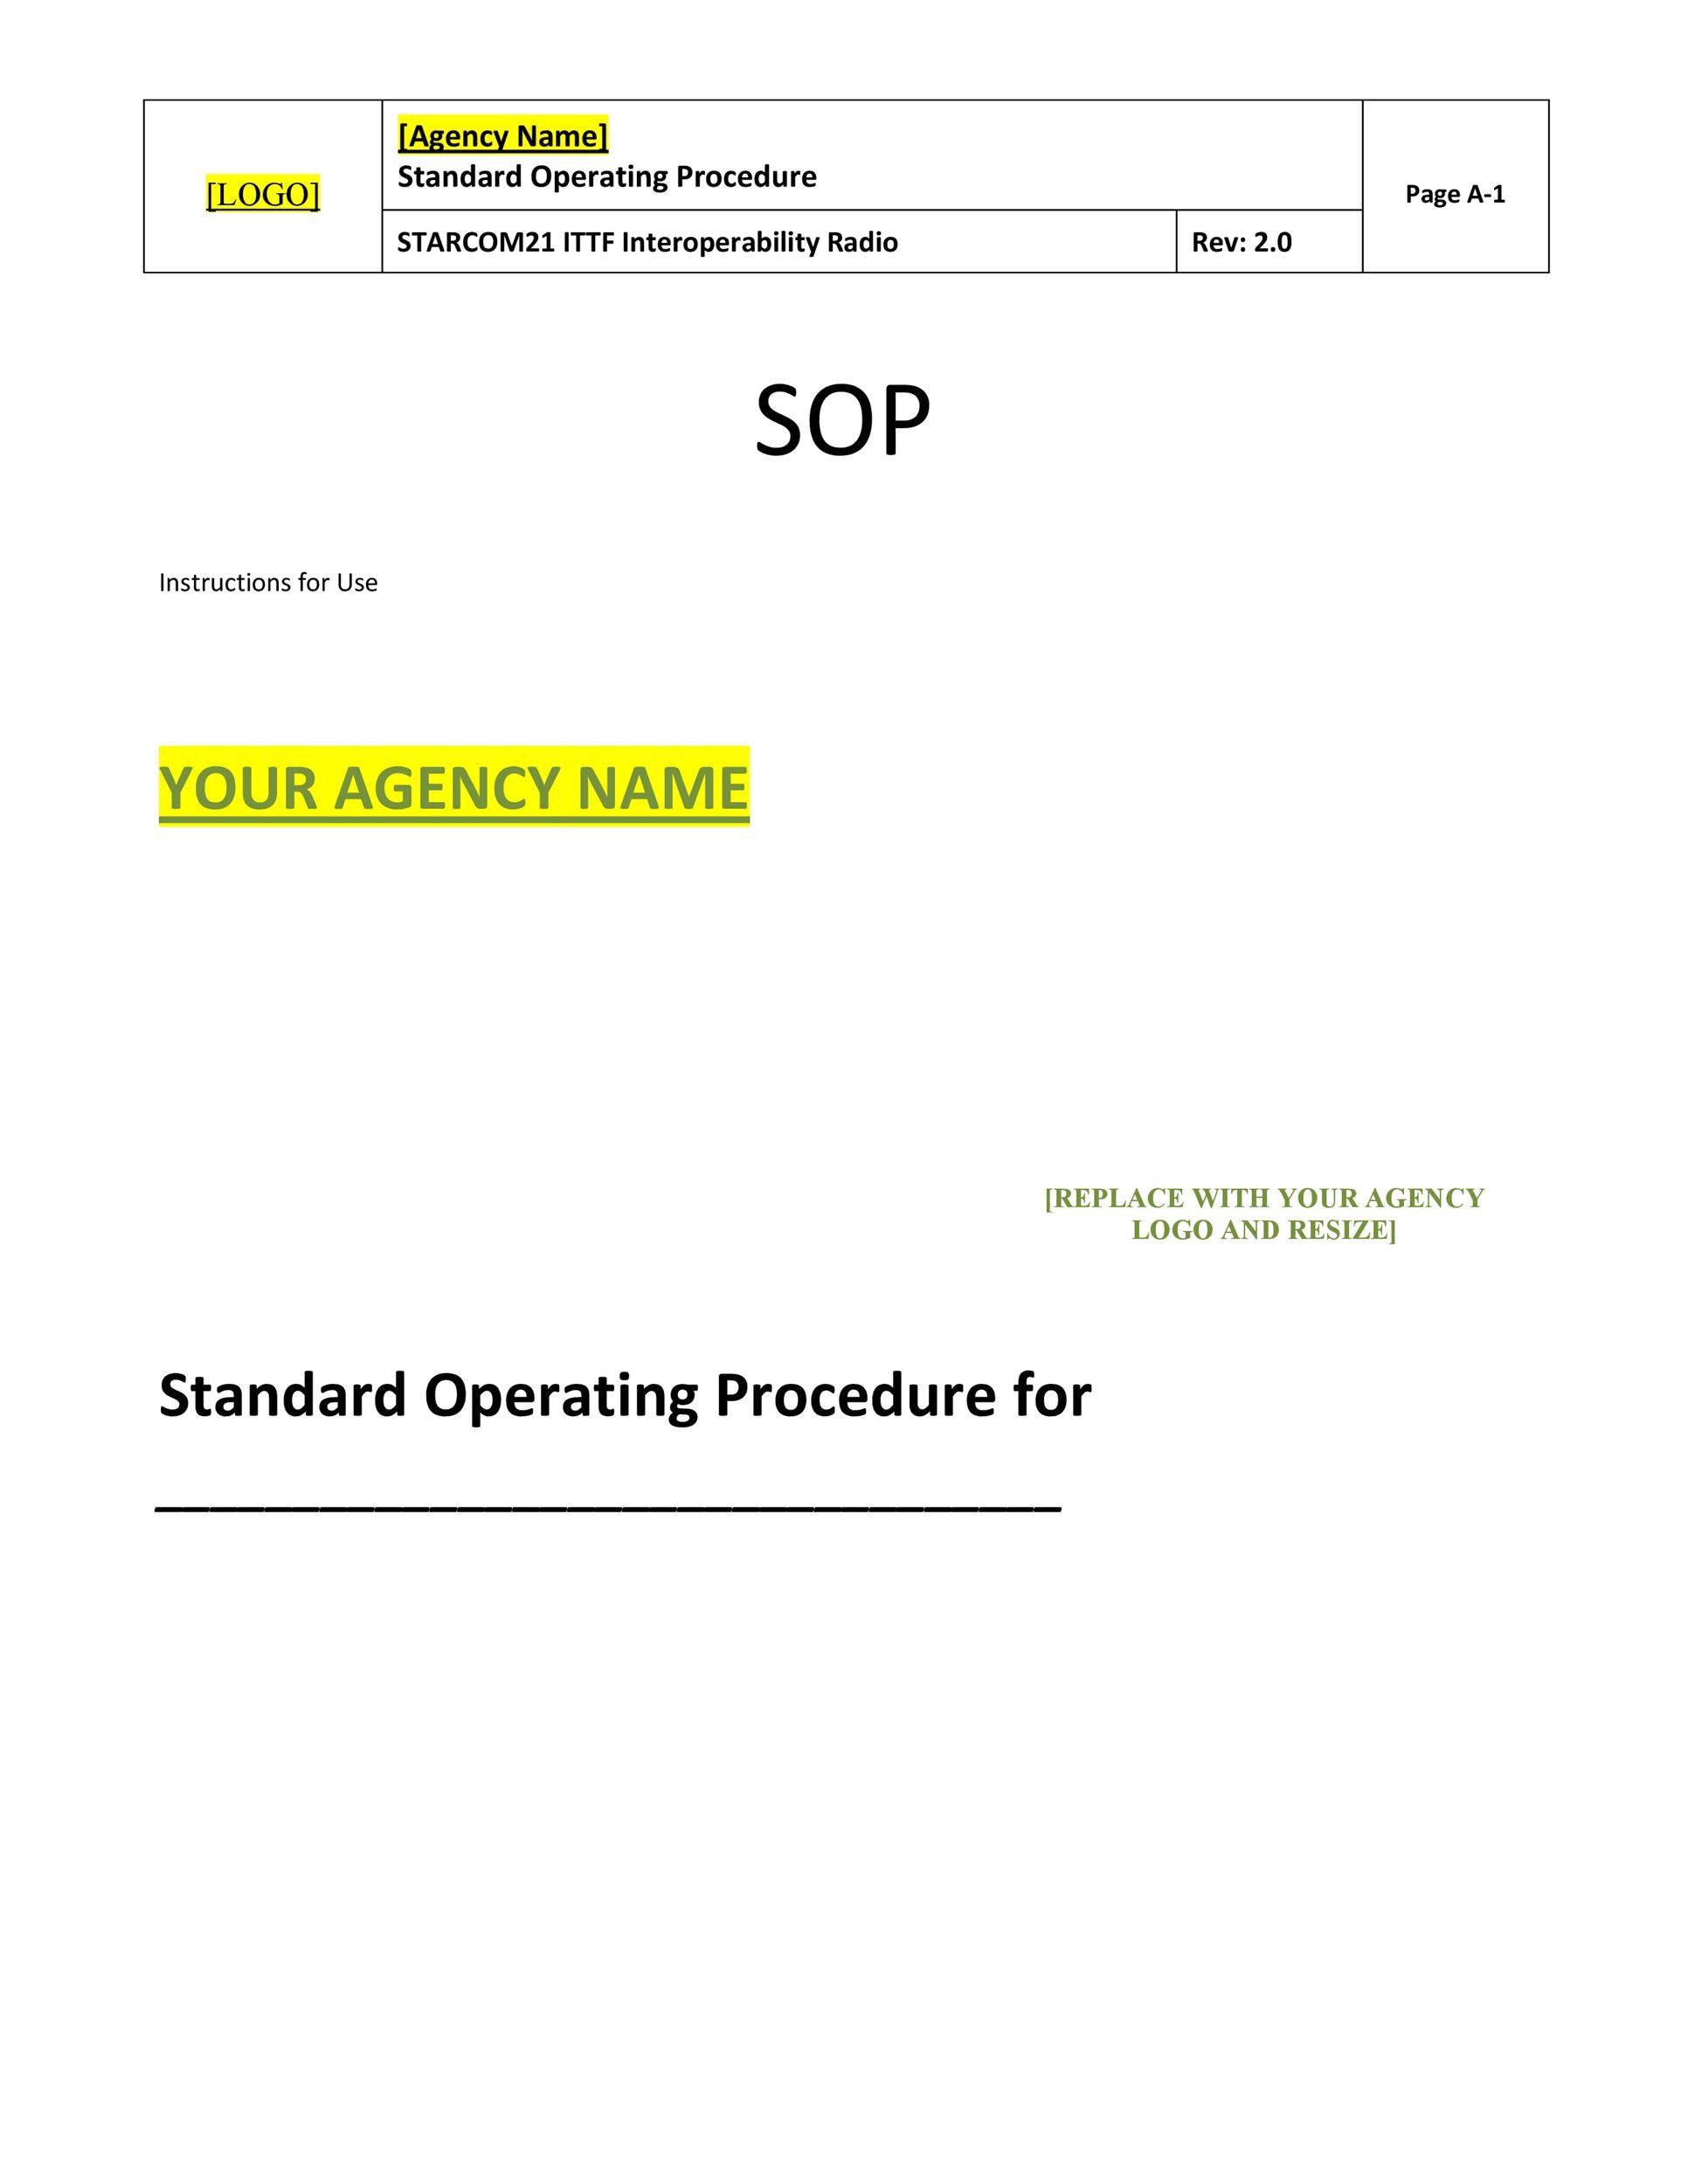 37-best-standard-operating-procedure-sop-templates